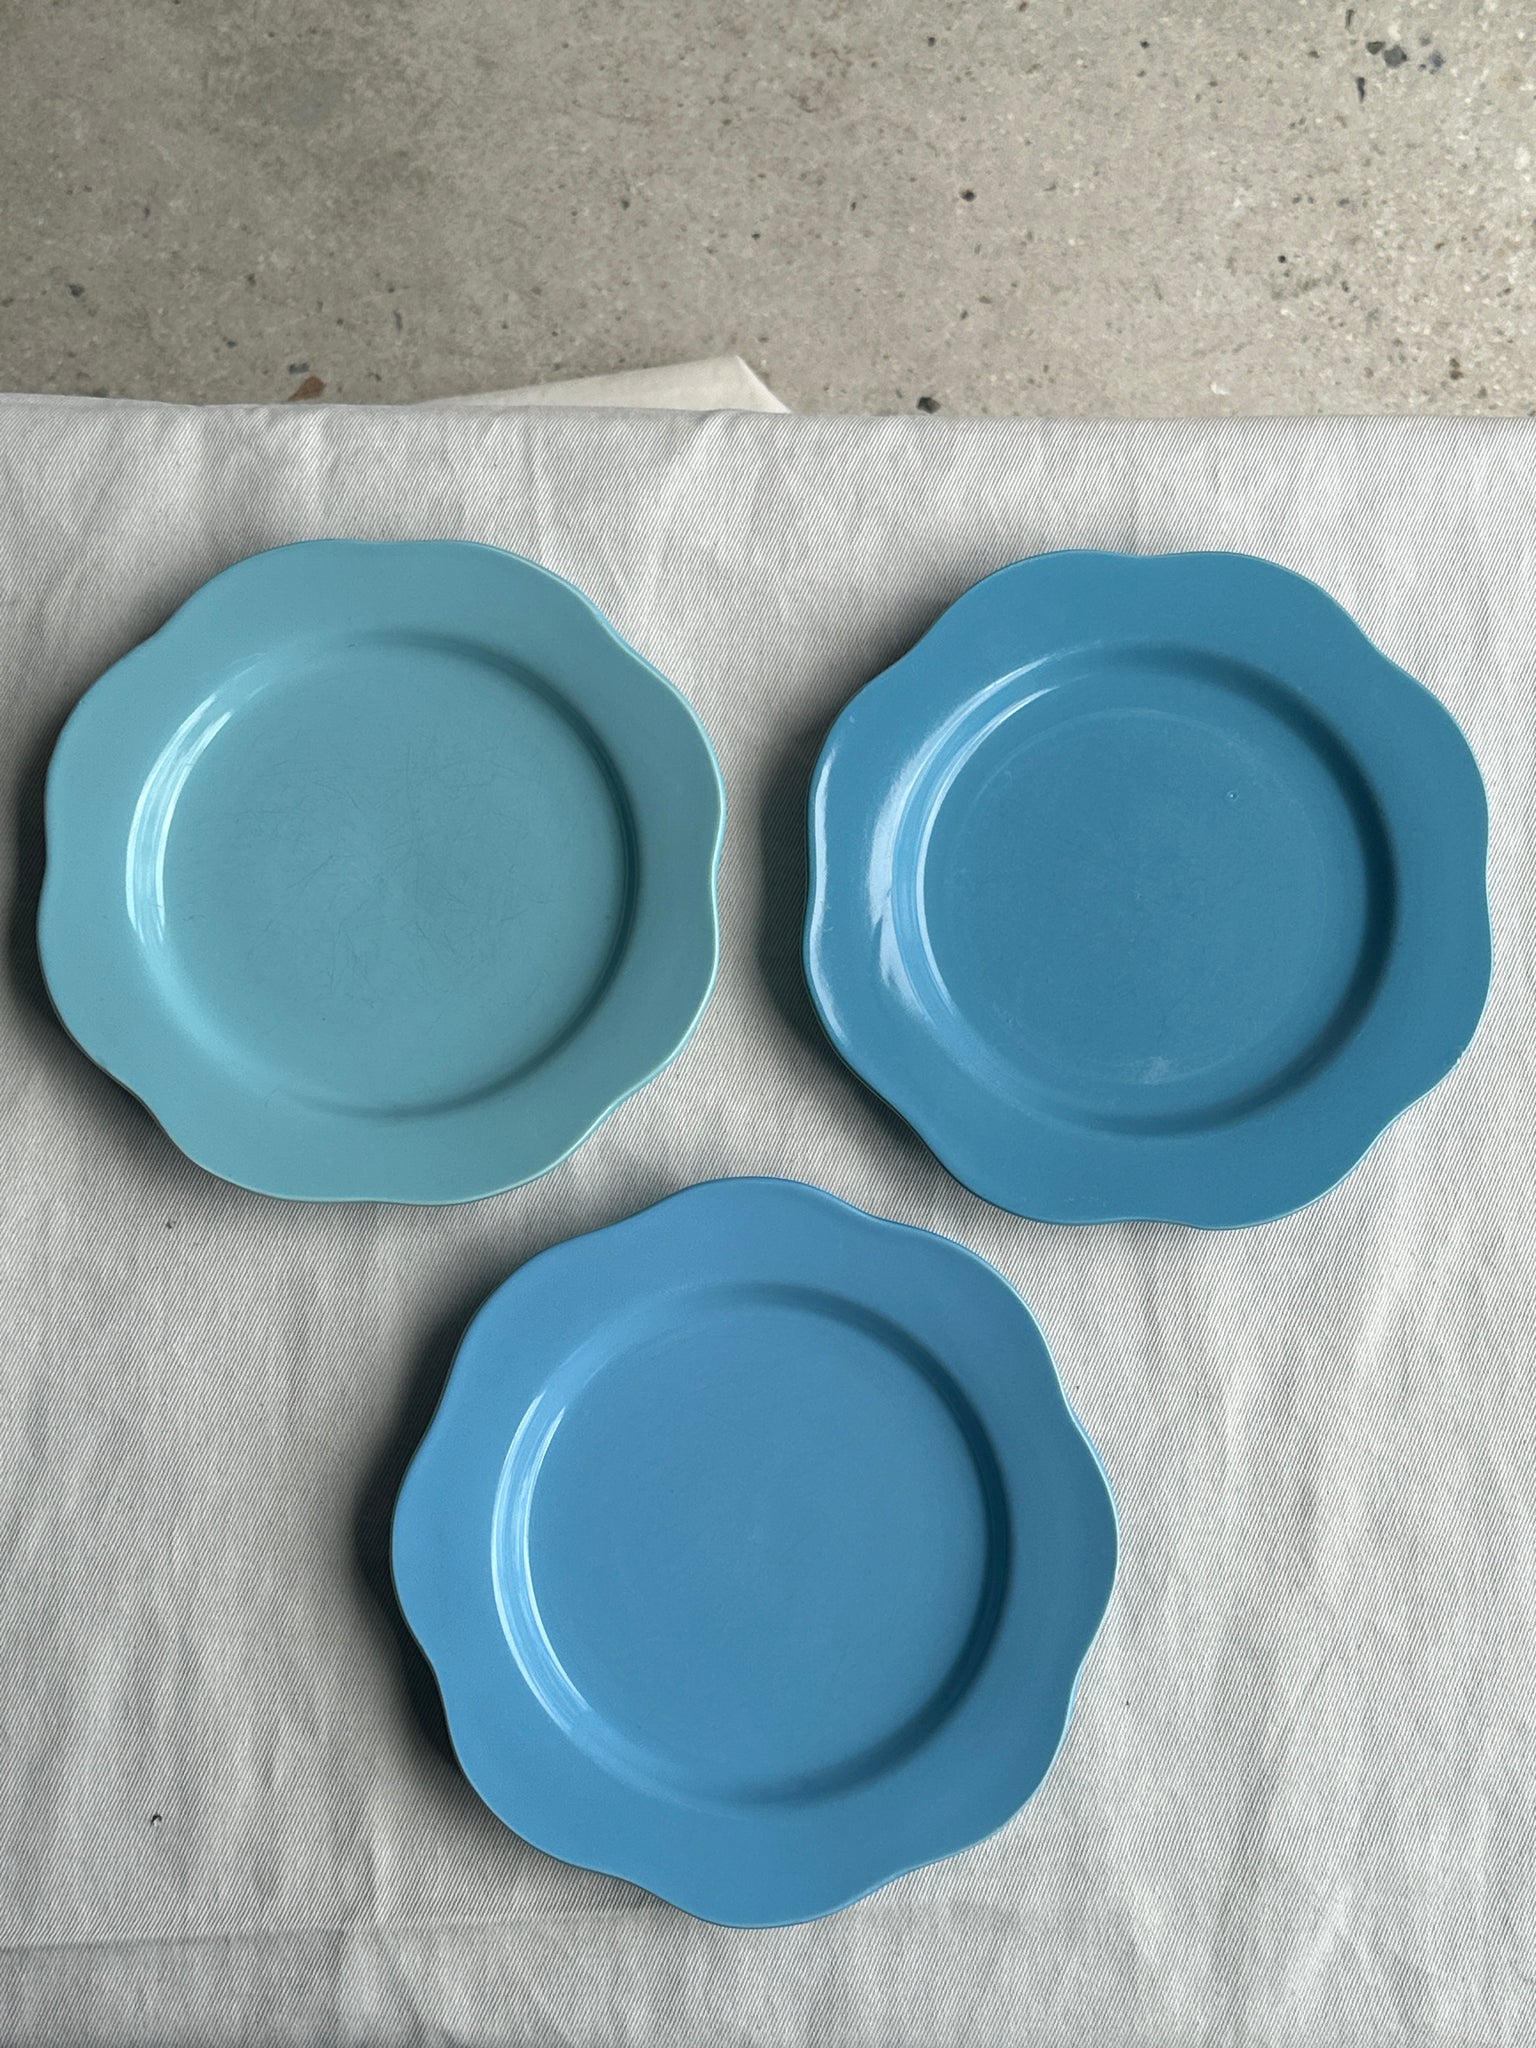 Lot de 3 petites assiettes à dessert bleues (3 tons de bleu dégradés) en forme de fleur, corolle